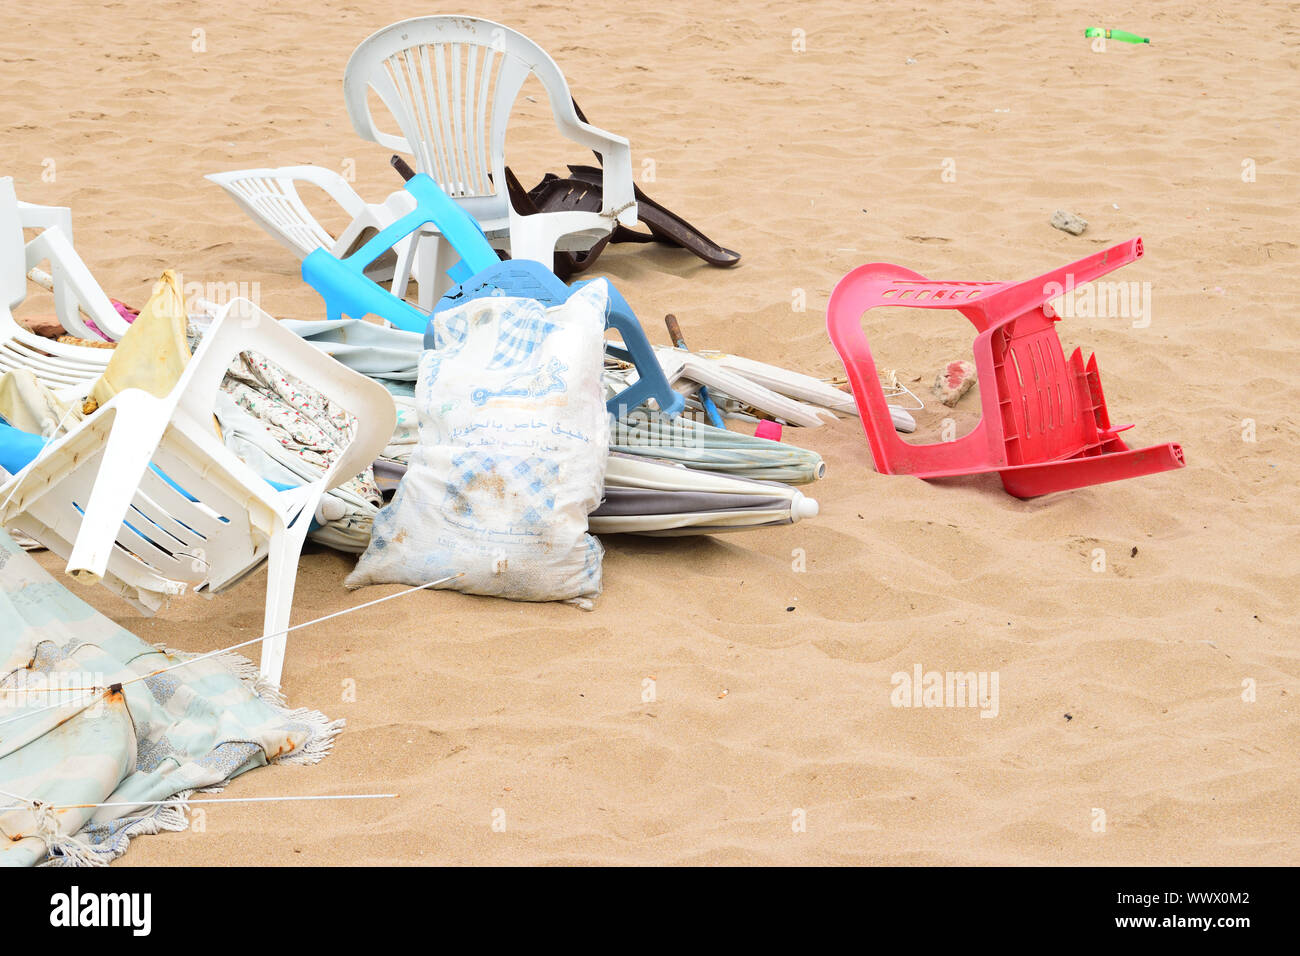 Inquinamento di plastica IN SPIAGGIA Foto Stock